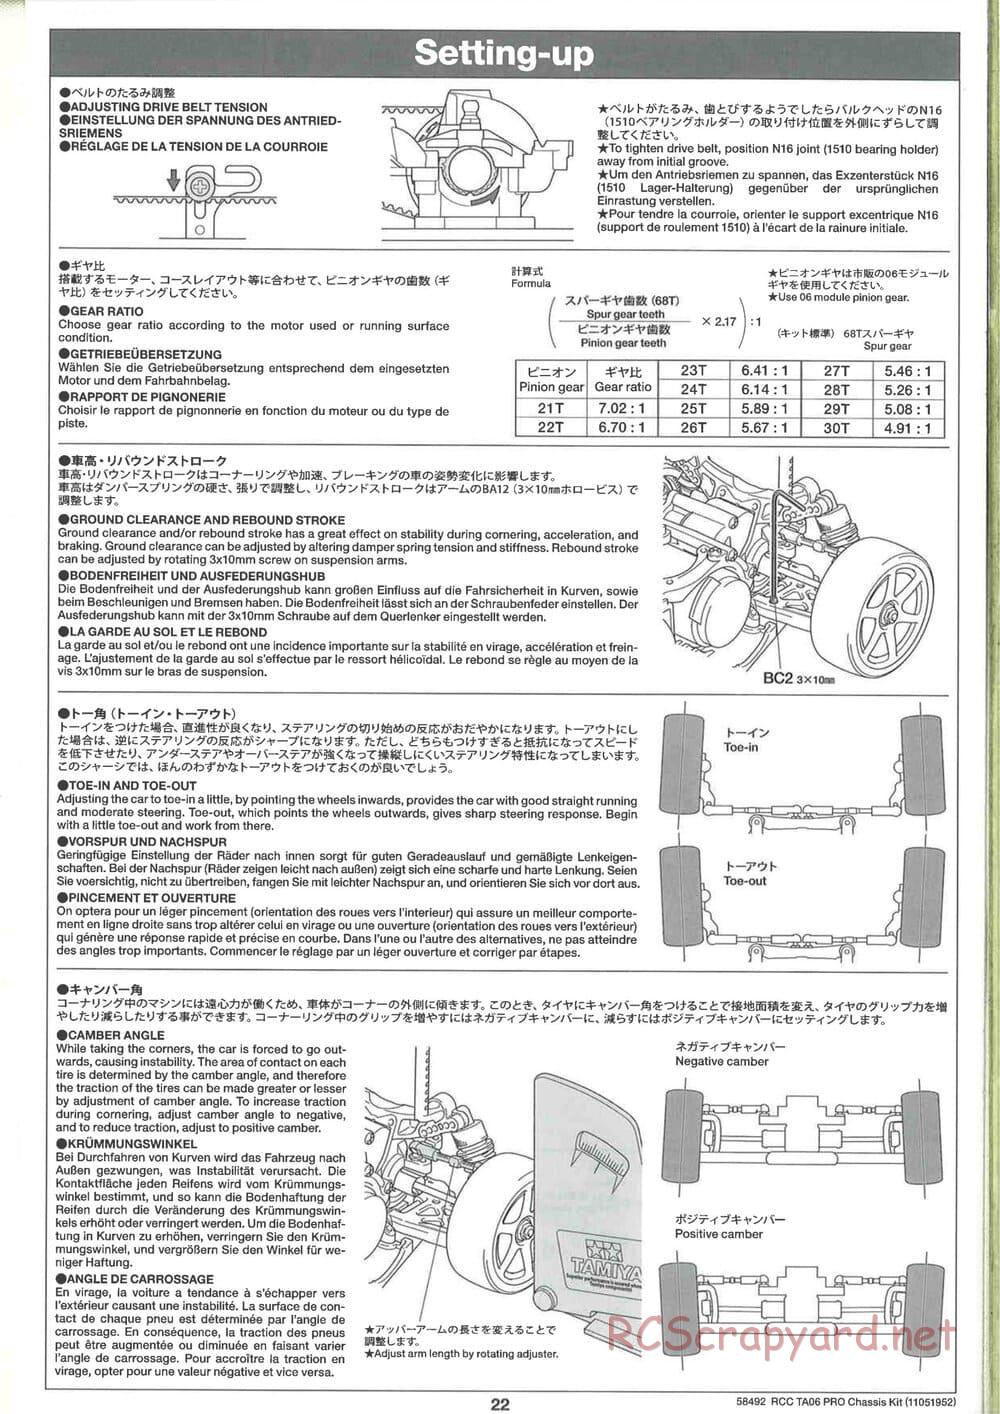 Tamiya - TA06 Pro Chassis - Manual - Page 22